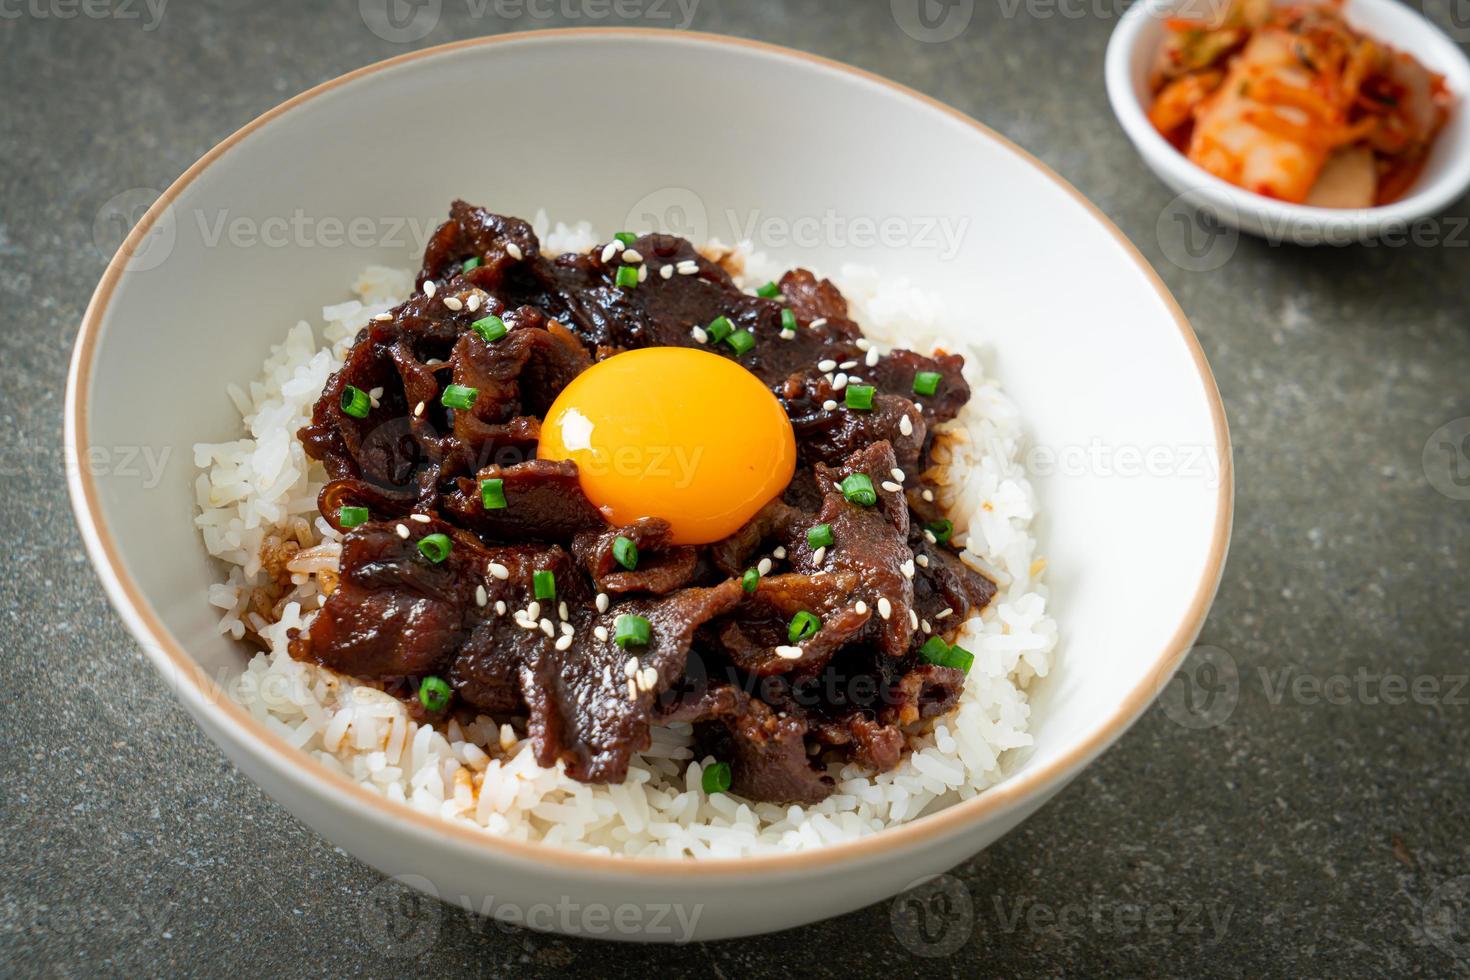 Reis mit Schweinefleisch mit Sojageschmack oder japanischem Schweinefleisch Donburi foto